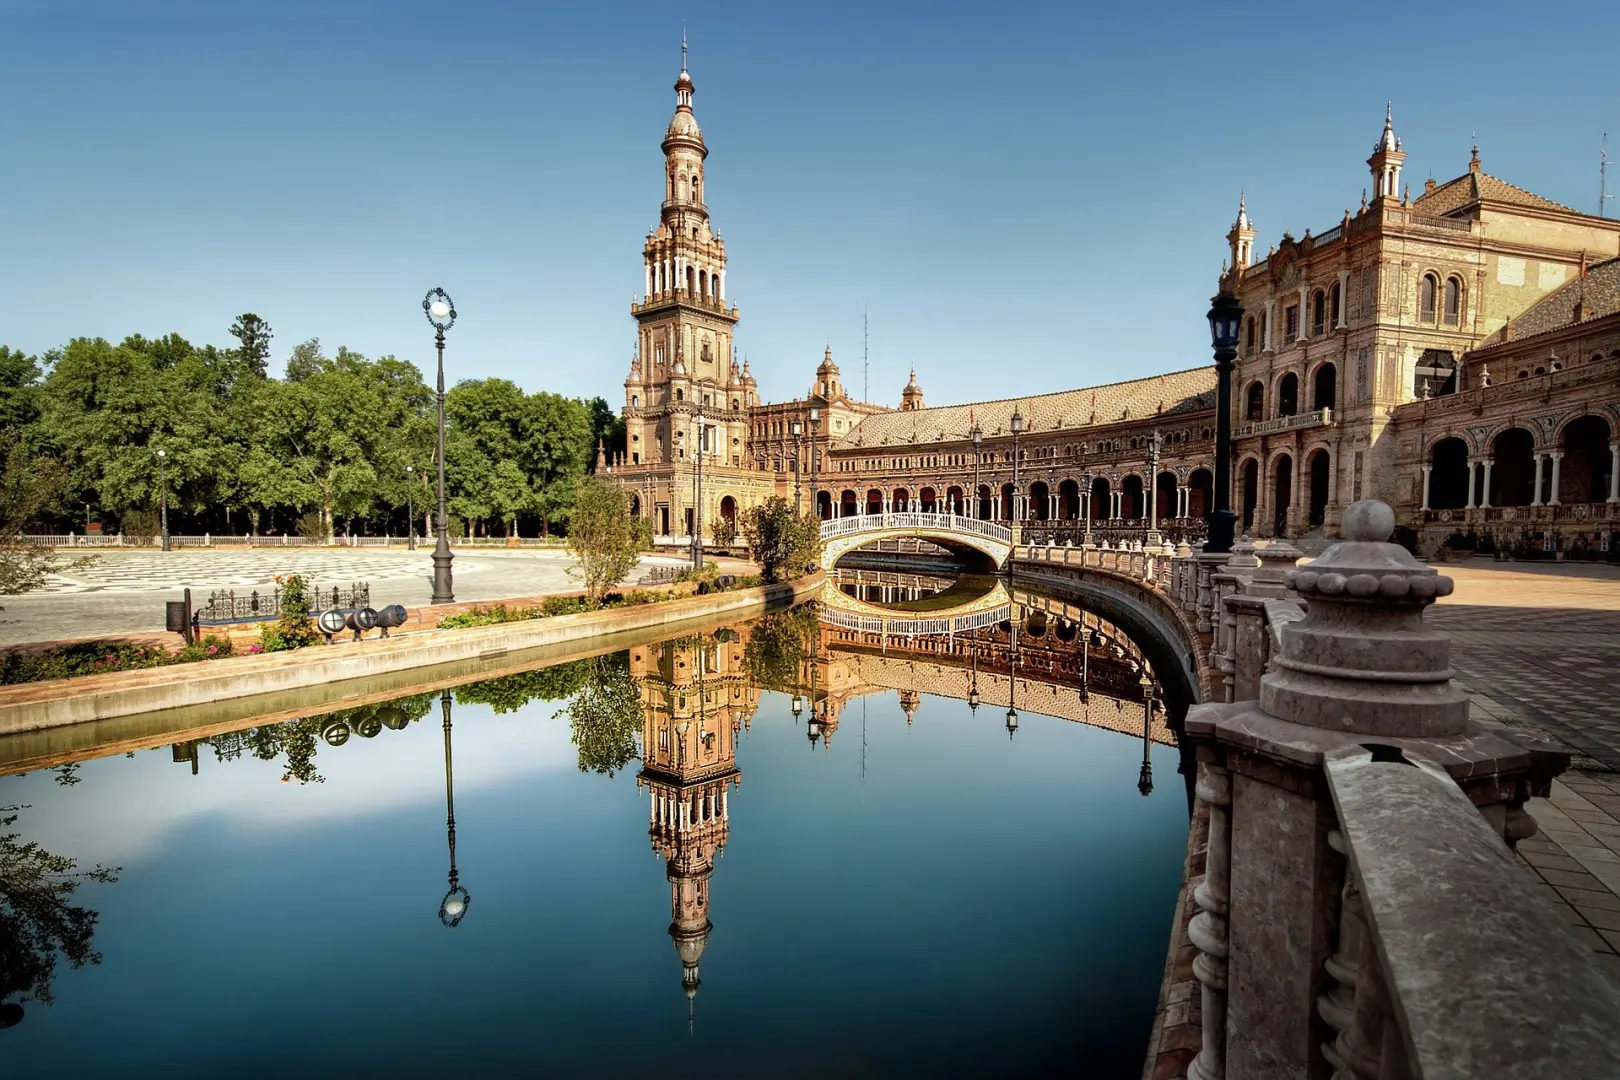 Descubre uno de los mejores tesoros escondidos de nuestro país en un viaje grupal por el interior de Andalucía. Granada, Sevilla, Córdoba no os dejará...